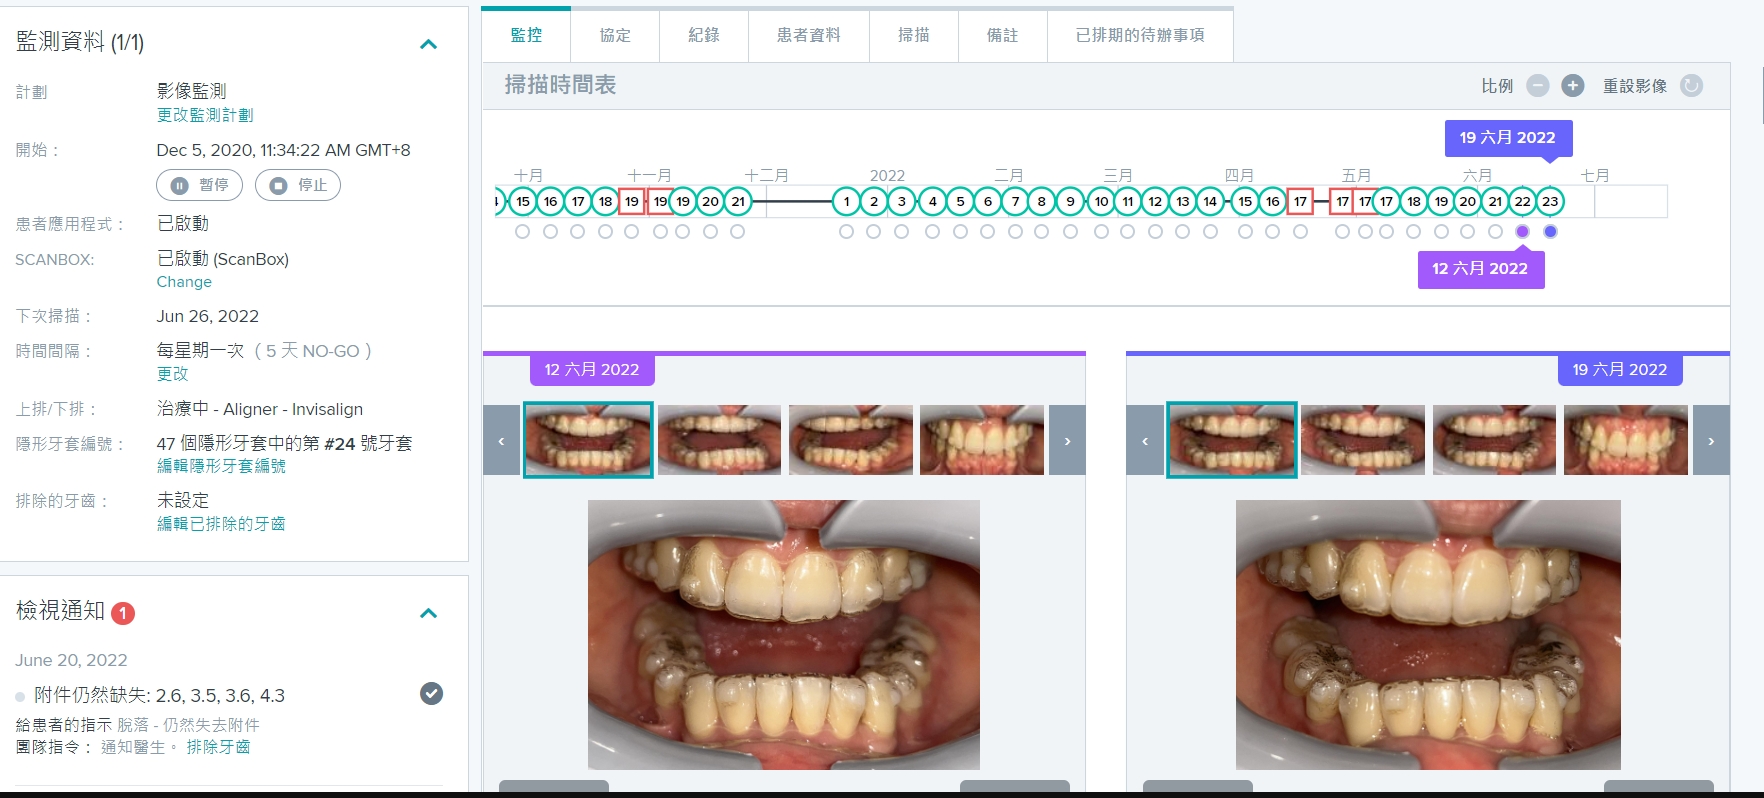 牙科監控系統Dental Monitoring